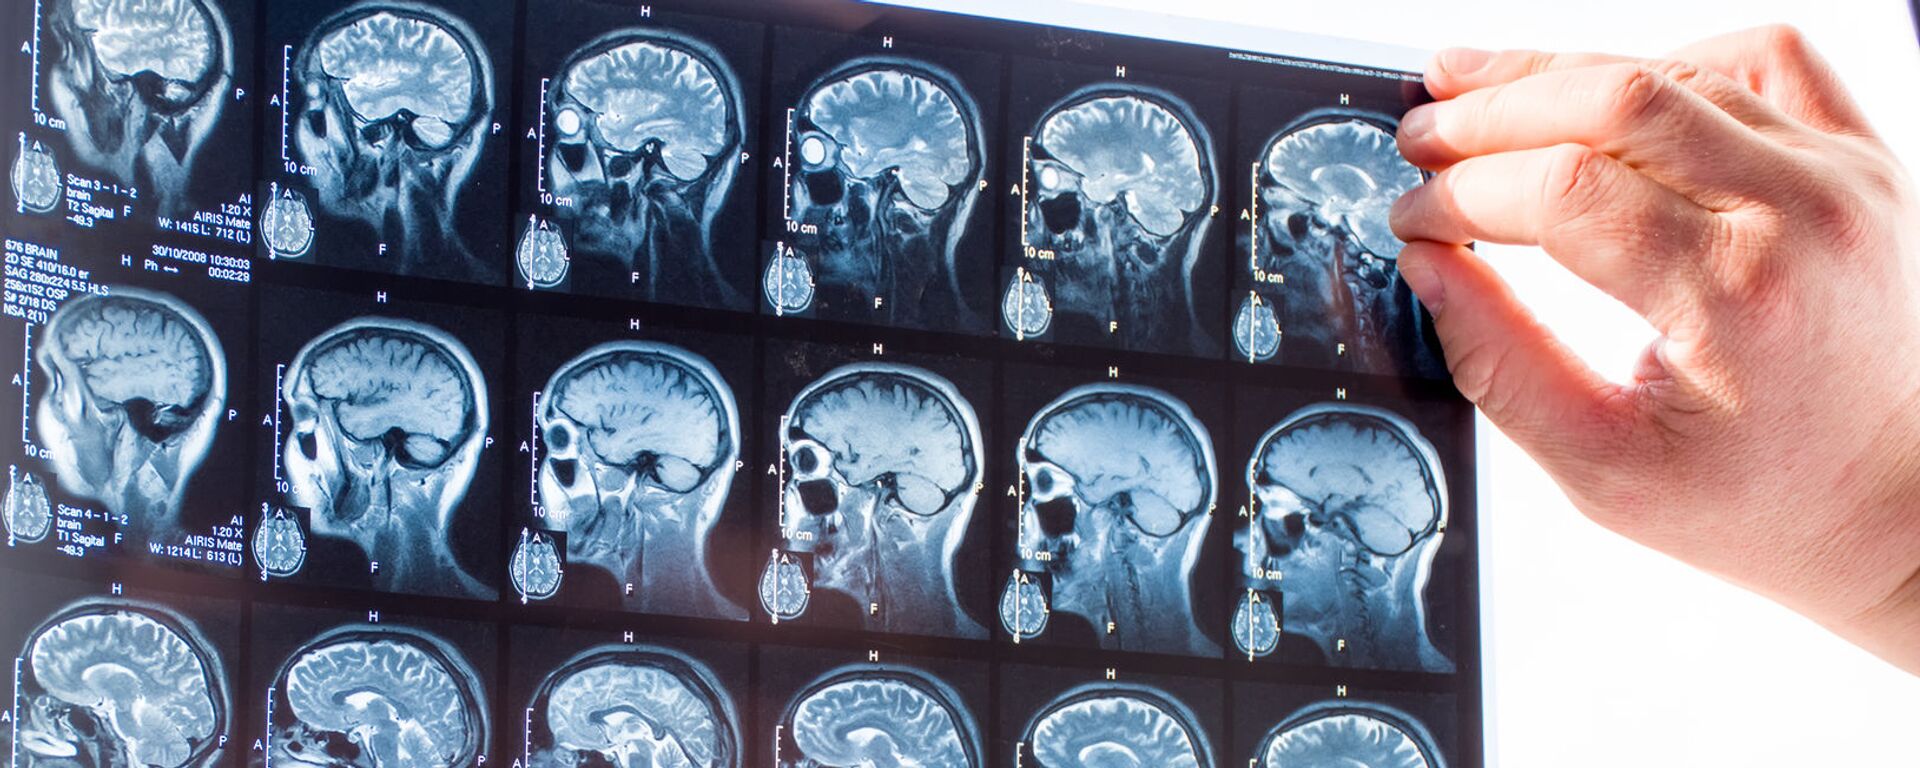 Врач изучает снимки головного мозга человека, архивное фото - Sputnik Lietuva, 1920, 23.05.2021